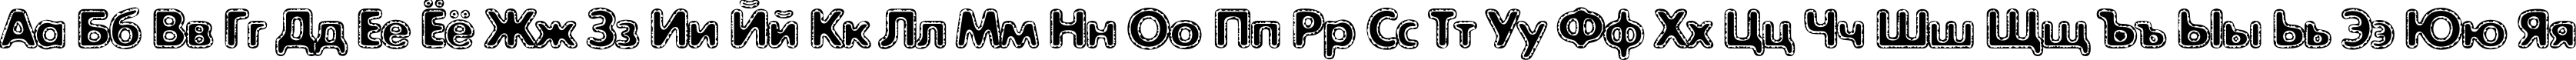 Пример написания русского алфавита шрифтом ExposureCMixOne